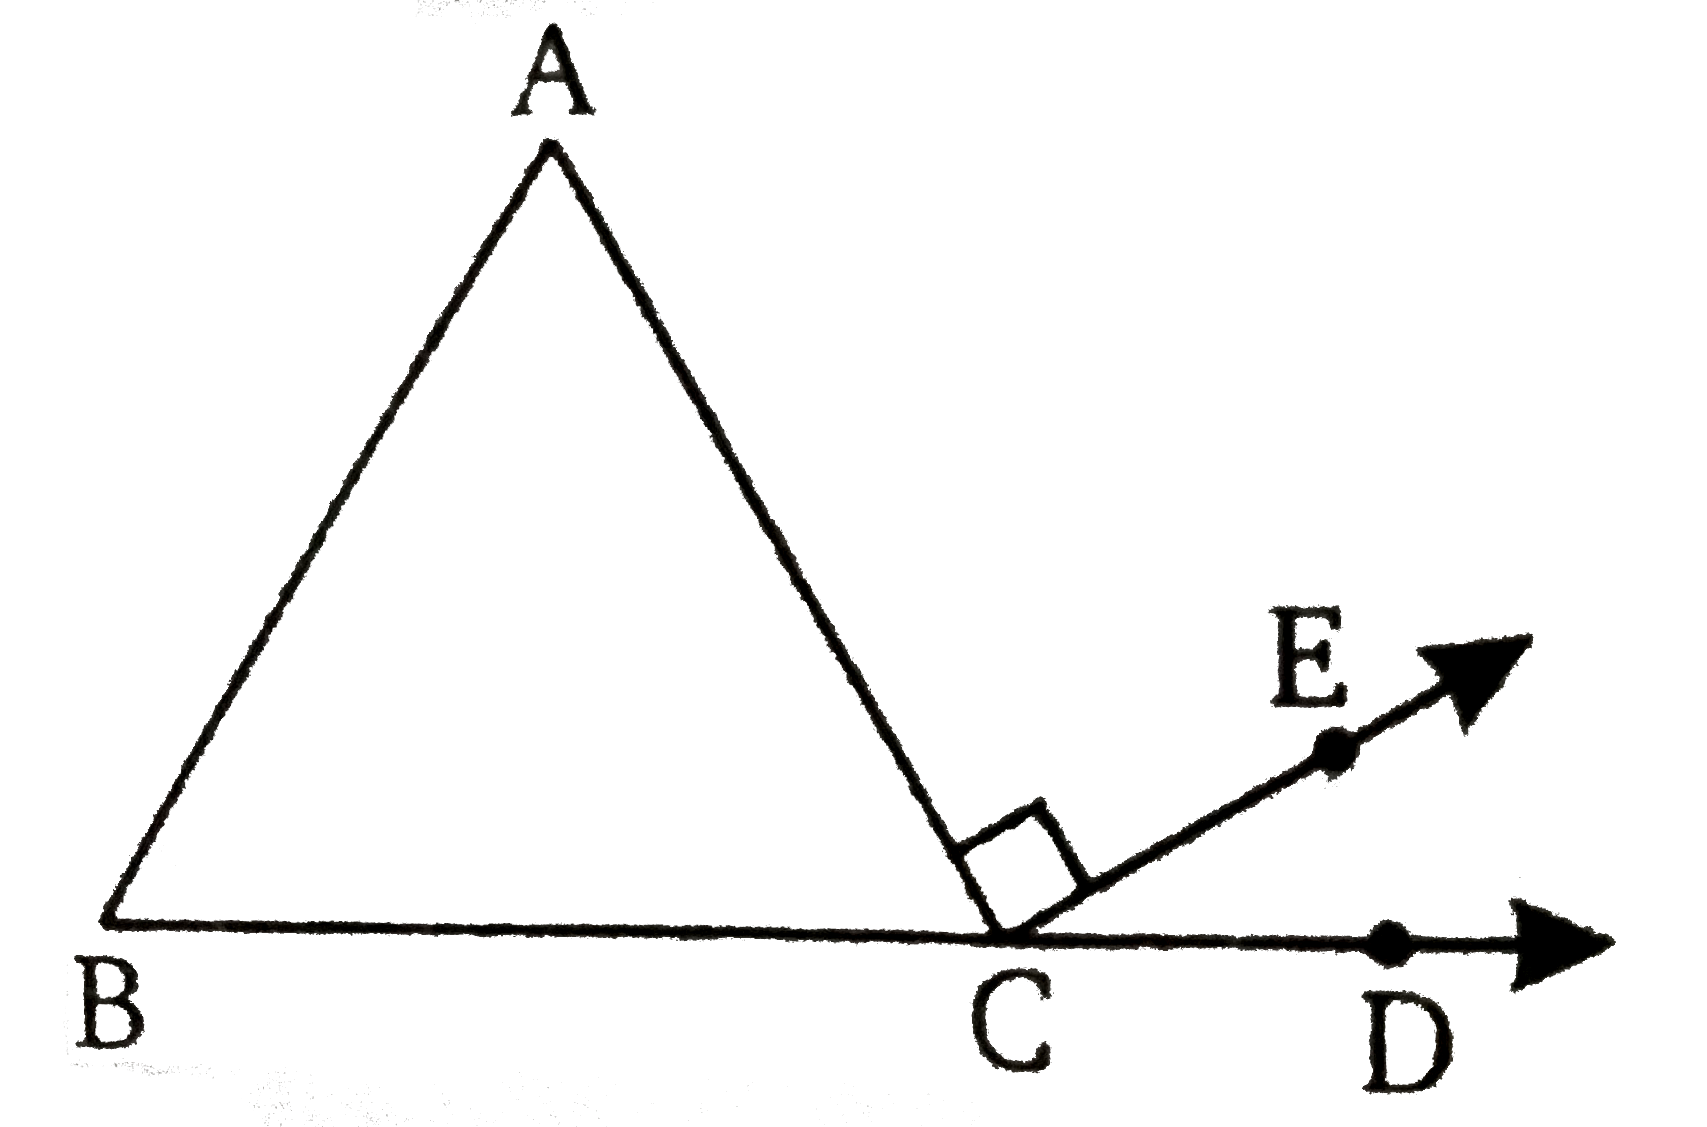 चित्र में, एक त्रिभुज ABC  है जिसमें BC को D  तक बढ़ाया गया है । यदि  /A : /B : /C : : 2: 3: 4 तथा  AC | CE  , हो  /ECD  ज्ञात कीजिए ।